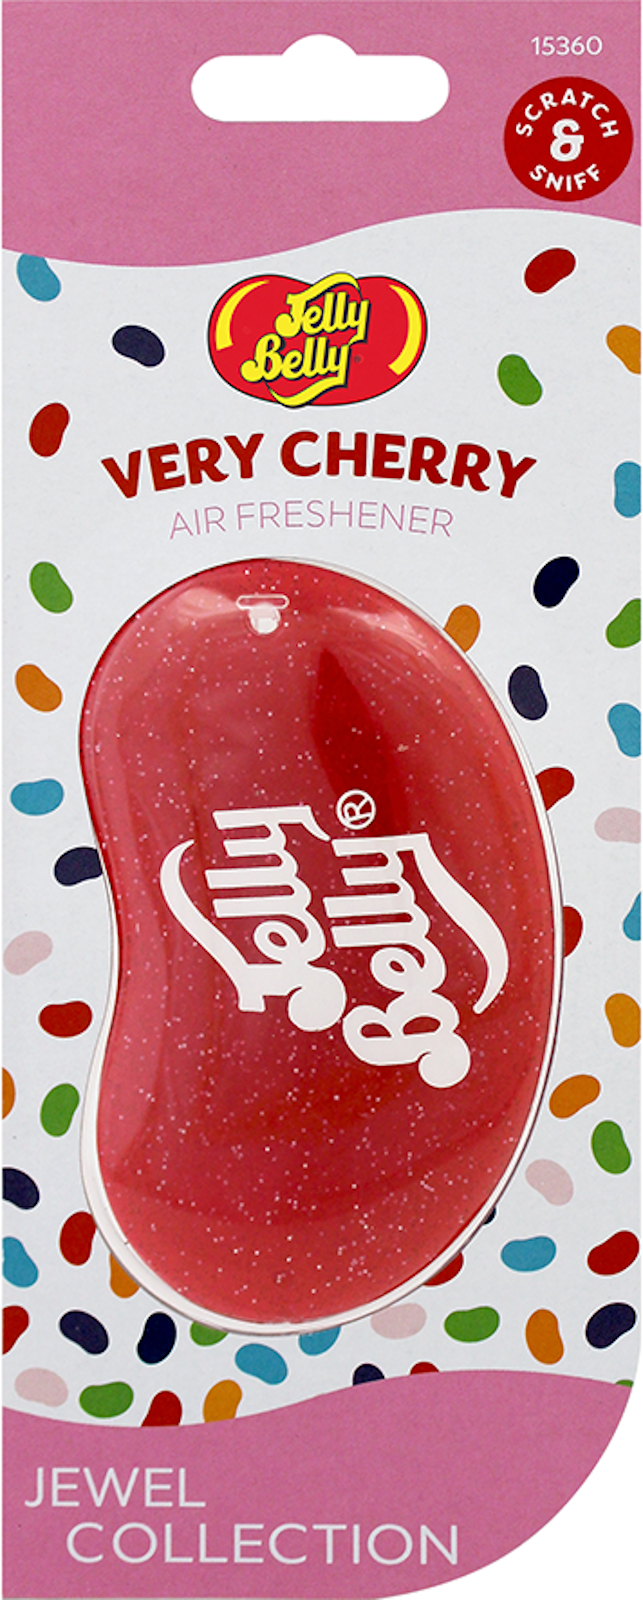 Jelly Belly 15360MTS - SH/131020 Lufterfrischer für das Auto Geruch Very  Cherry 18g Jewel Collection Air Freshener for Cars